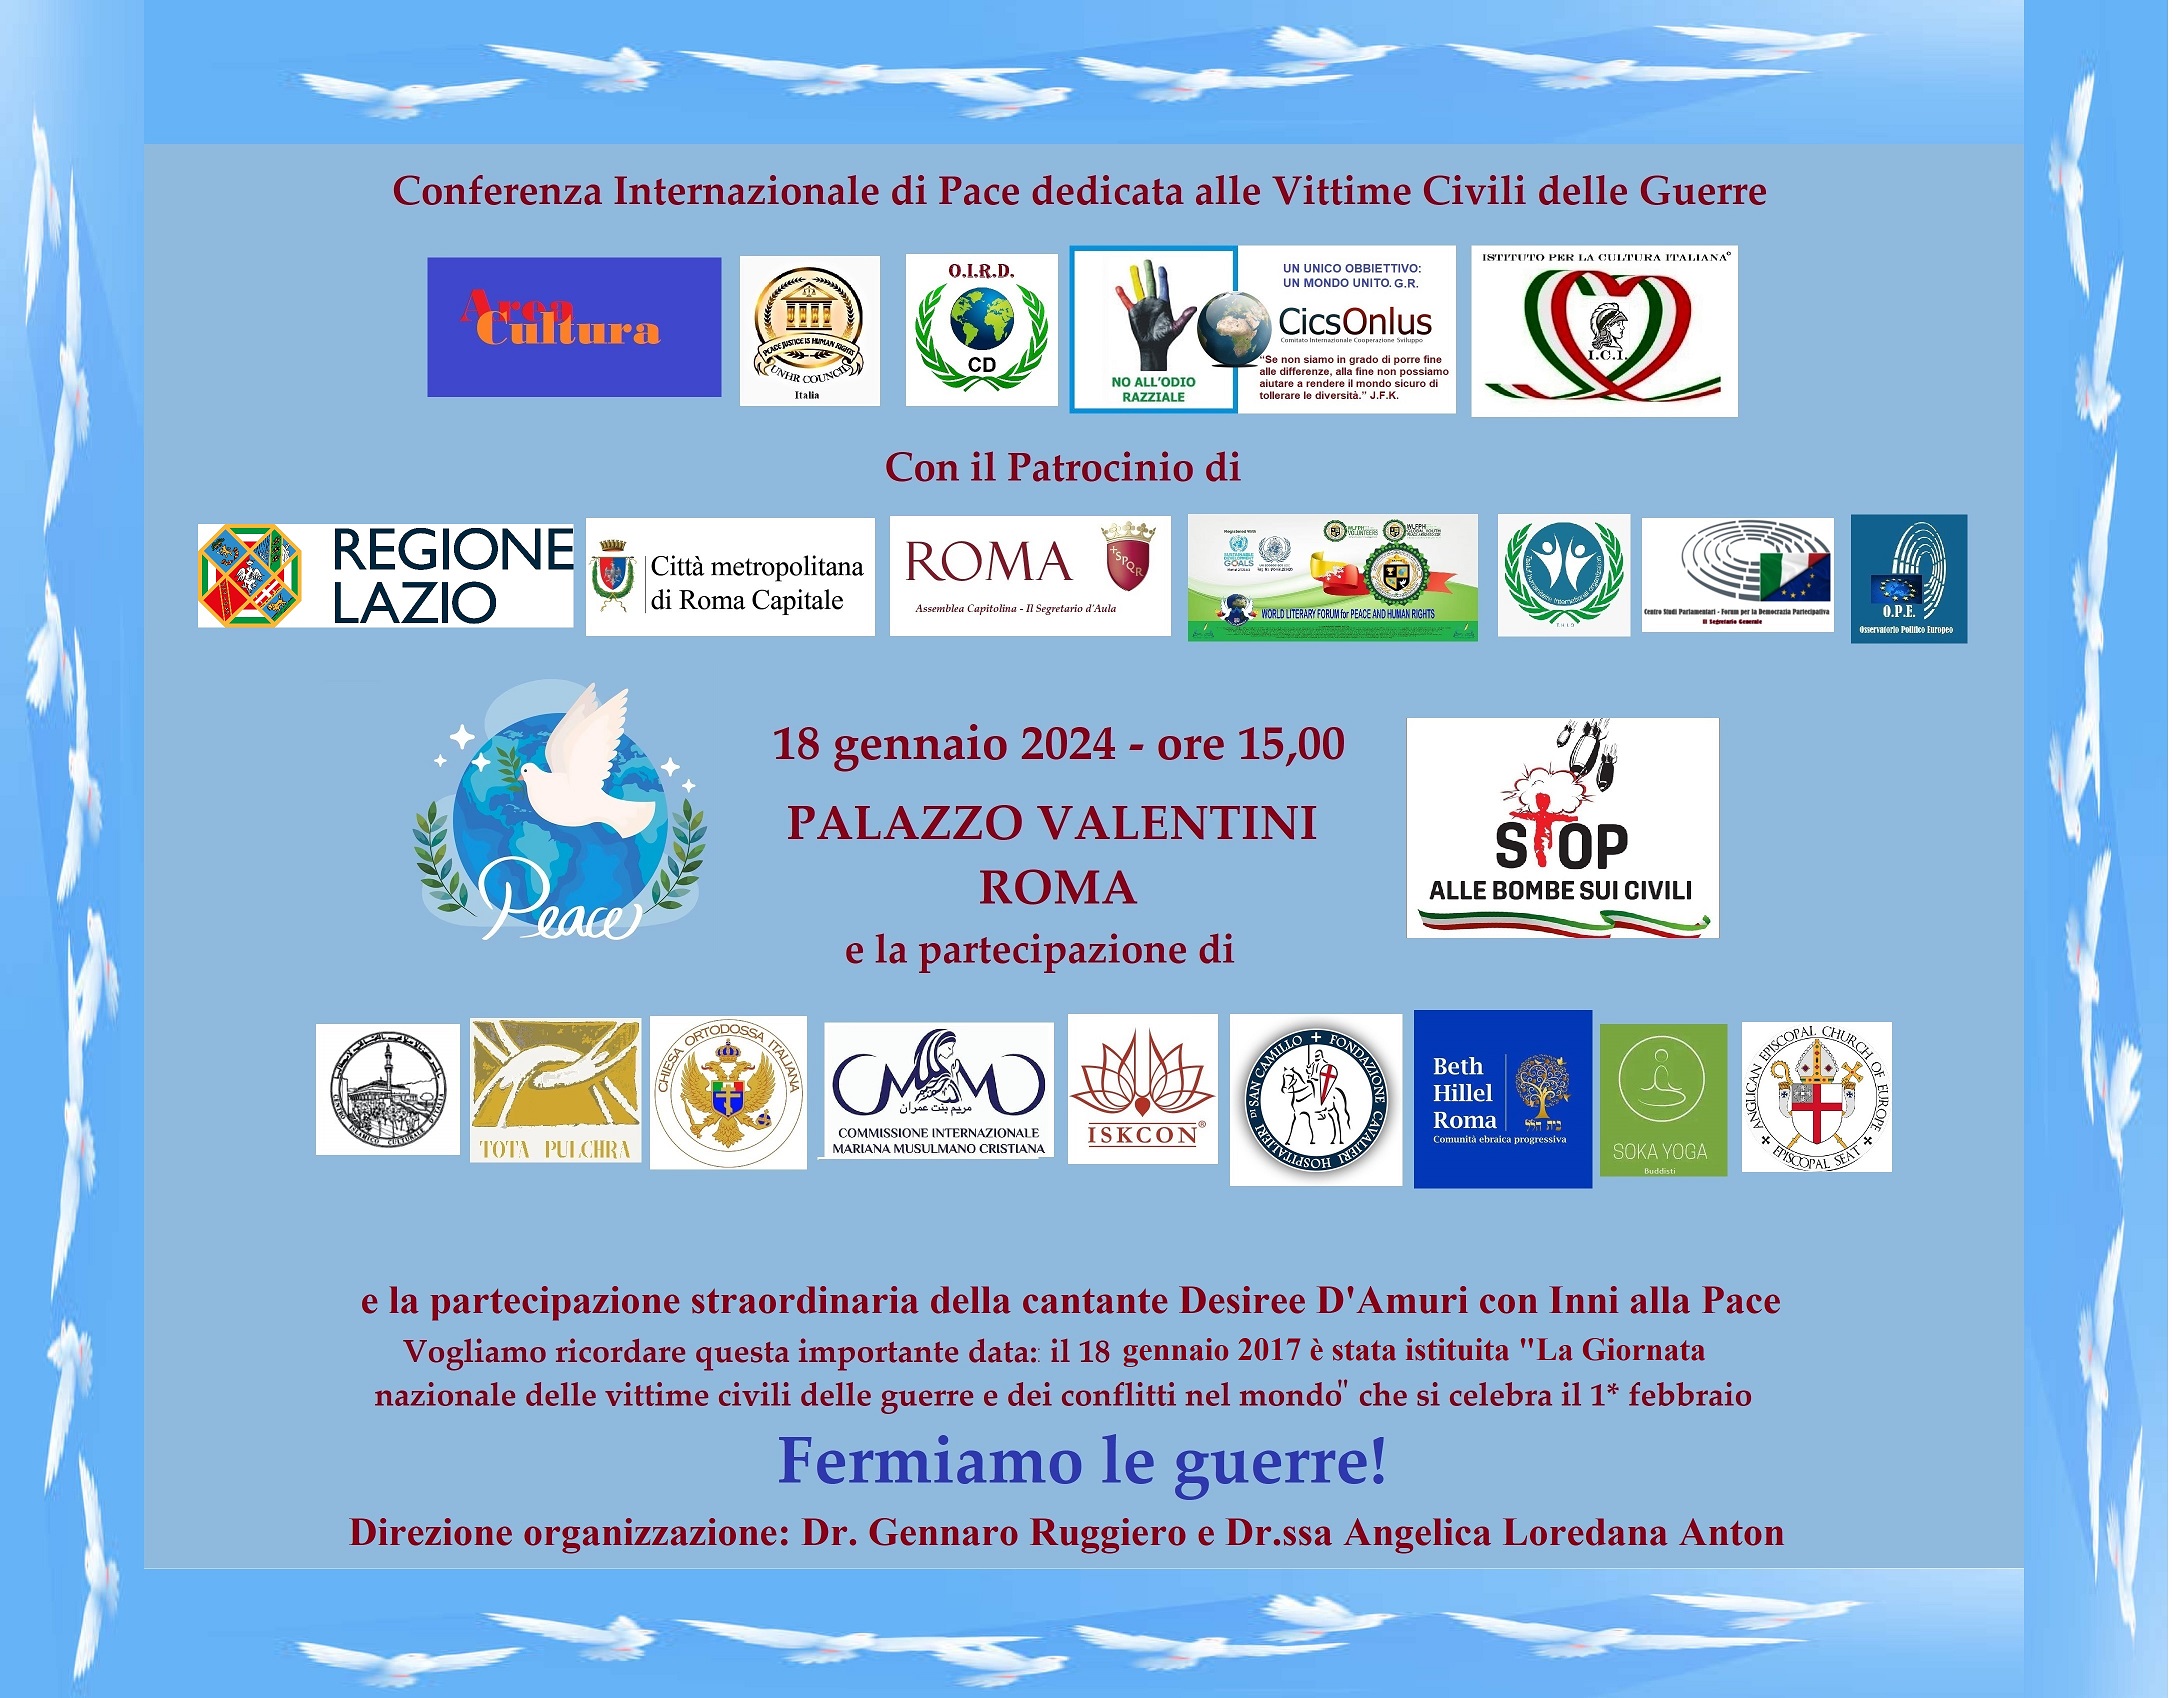 Conferenza Internazionale di Pace dedicata alle Vittime Civili delle Guerre, il 18 gennaio a Palazzo Valentini - Roma